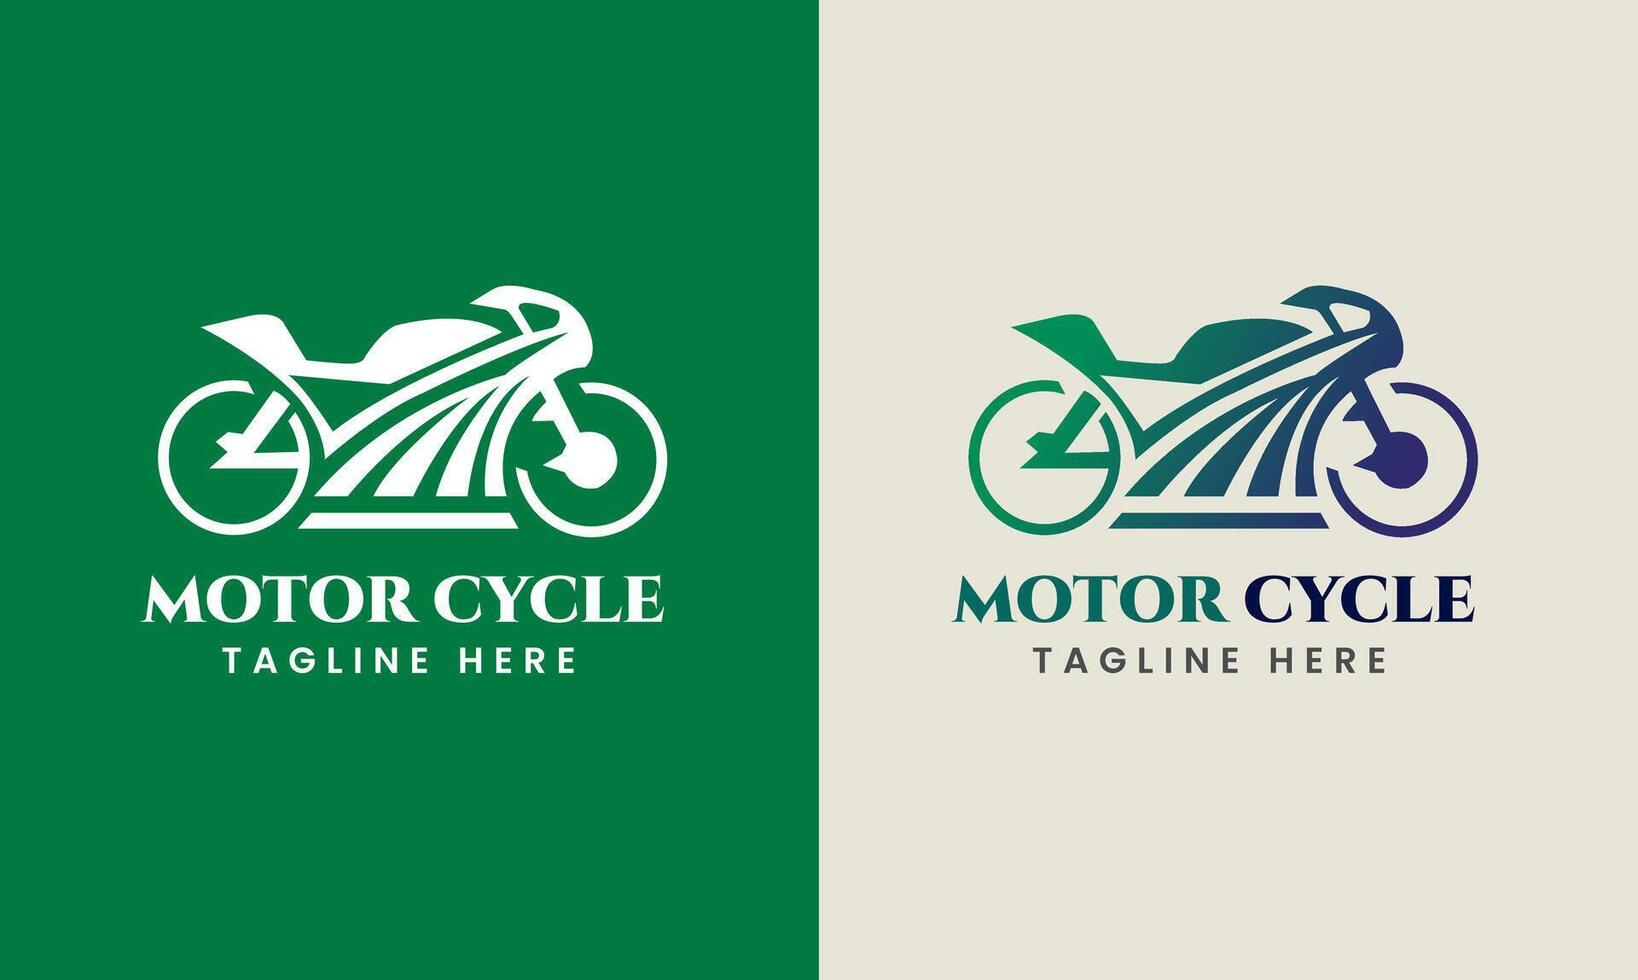 sport automobile logo modèle, parfait logo pour courses équipes, moto, moto communauté, moto logo concept vecteur